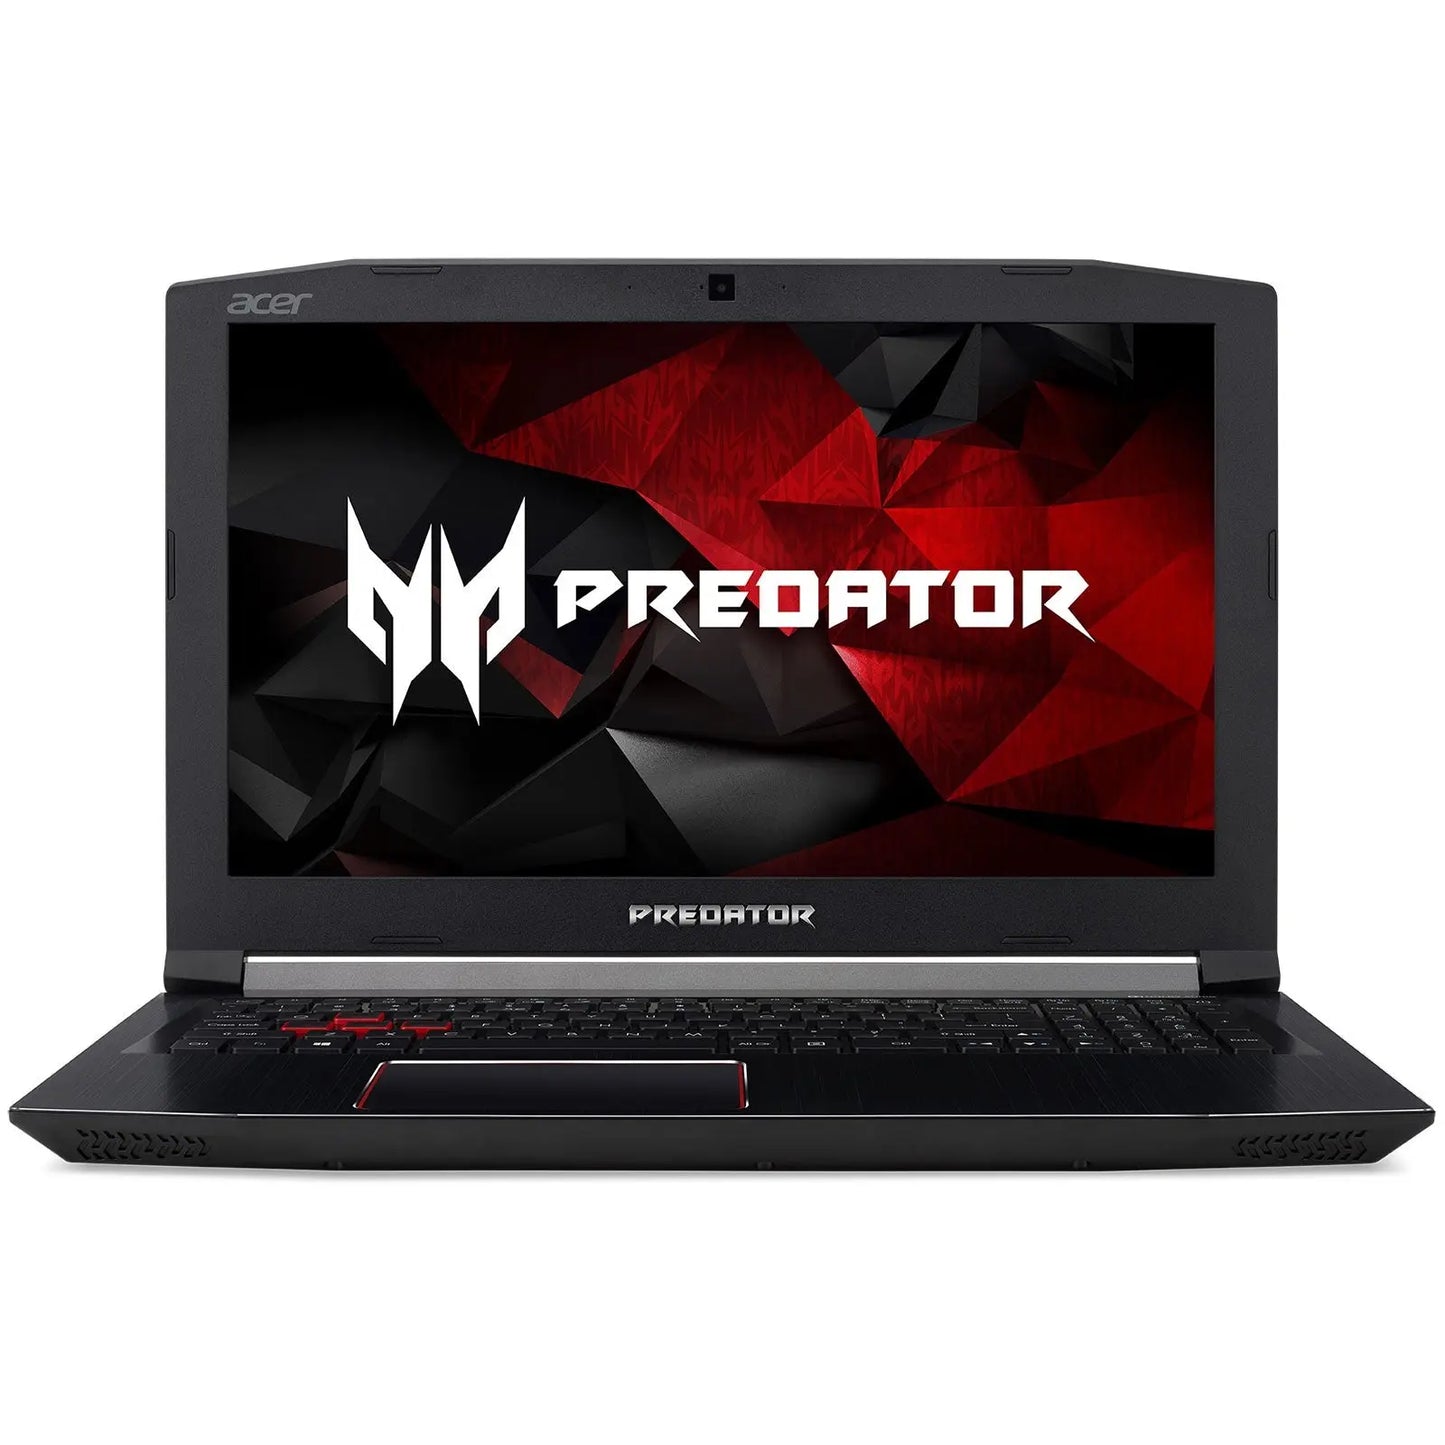 Acer Predator Helios 300 G3-572-5409 4713883243070 acer